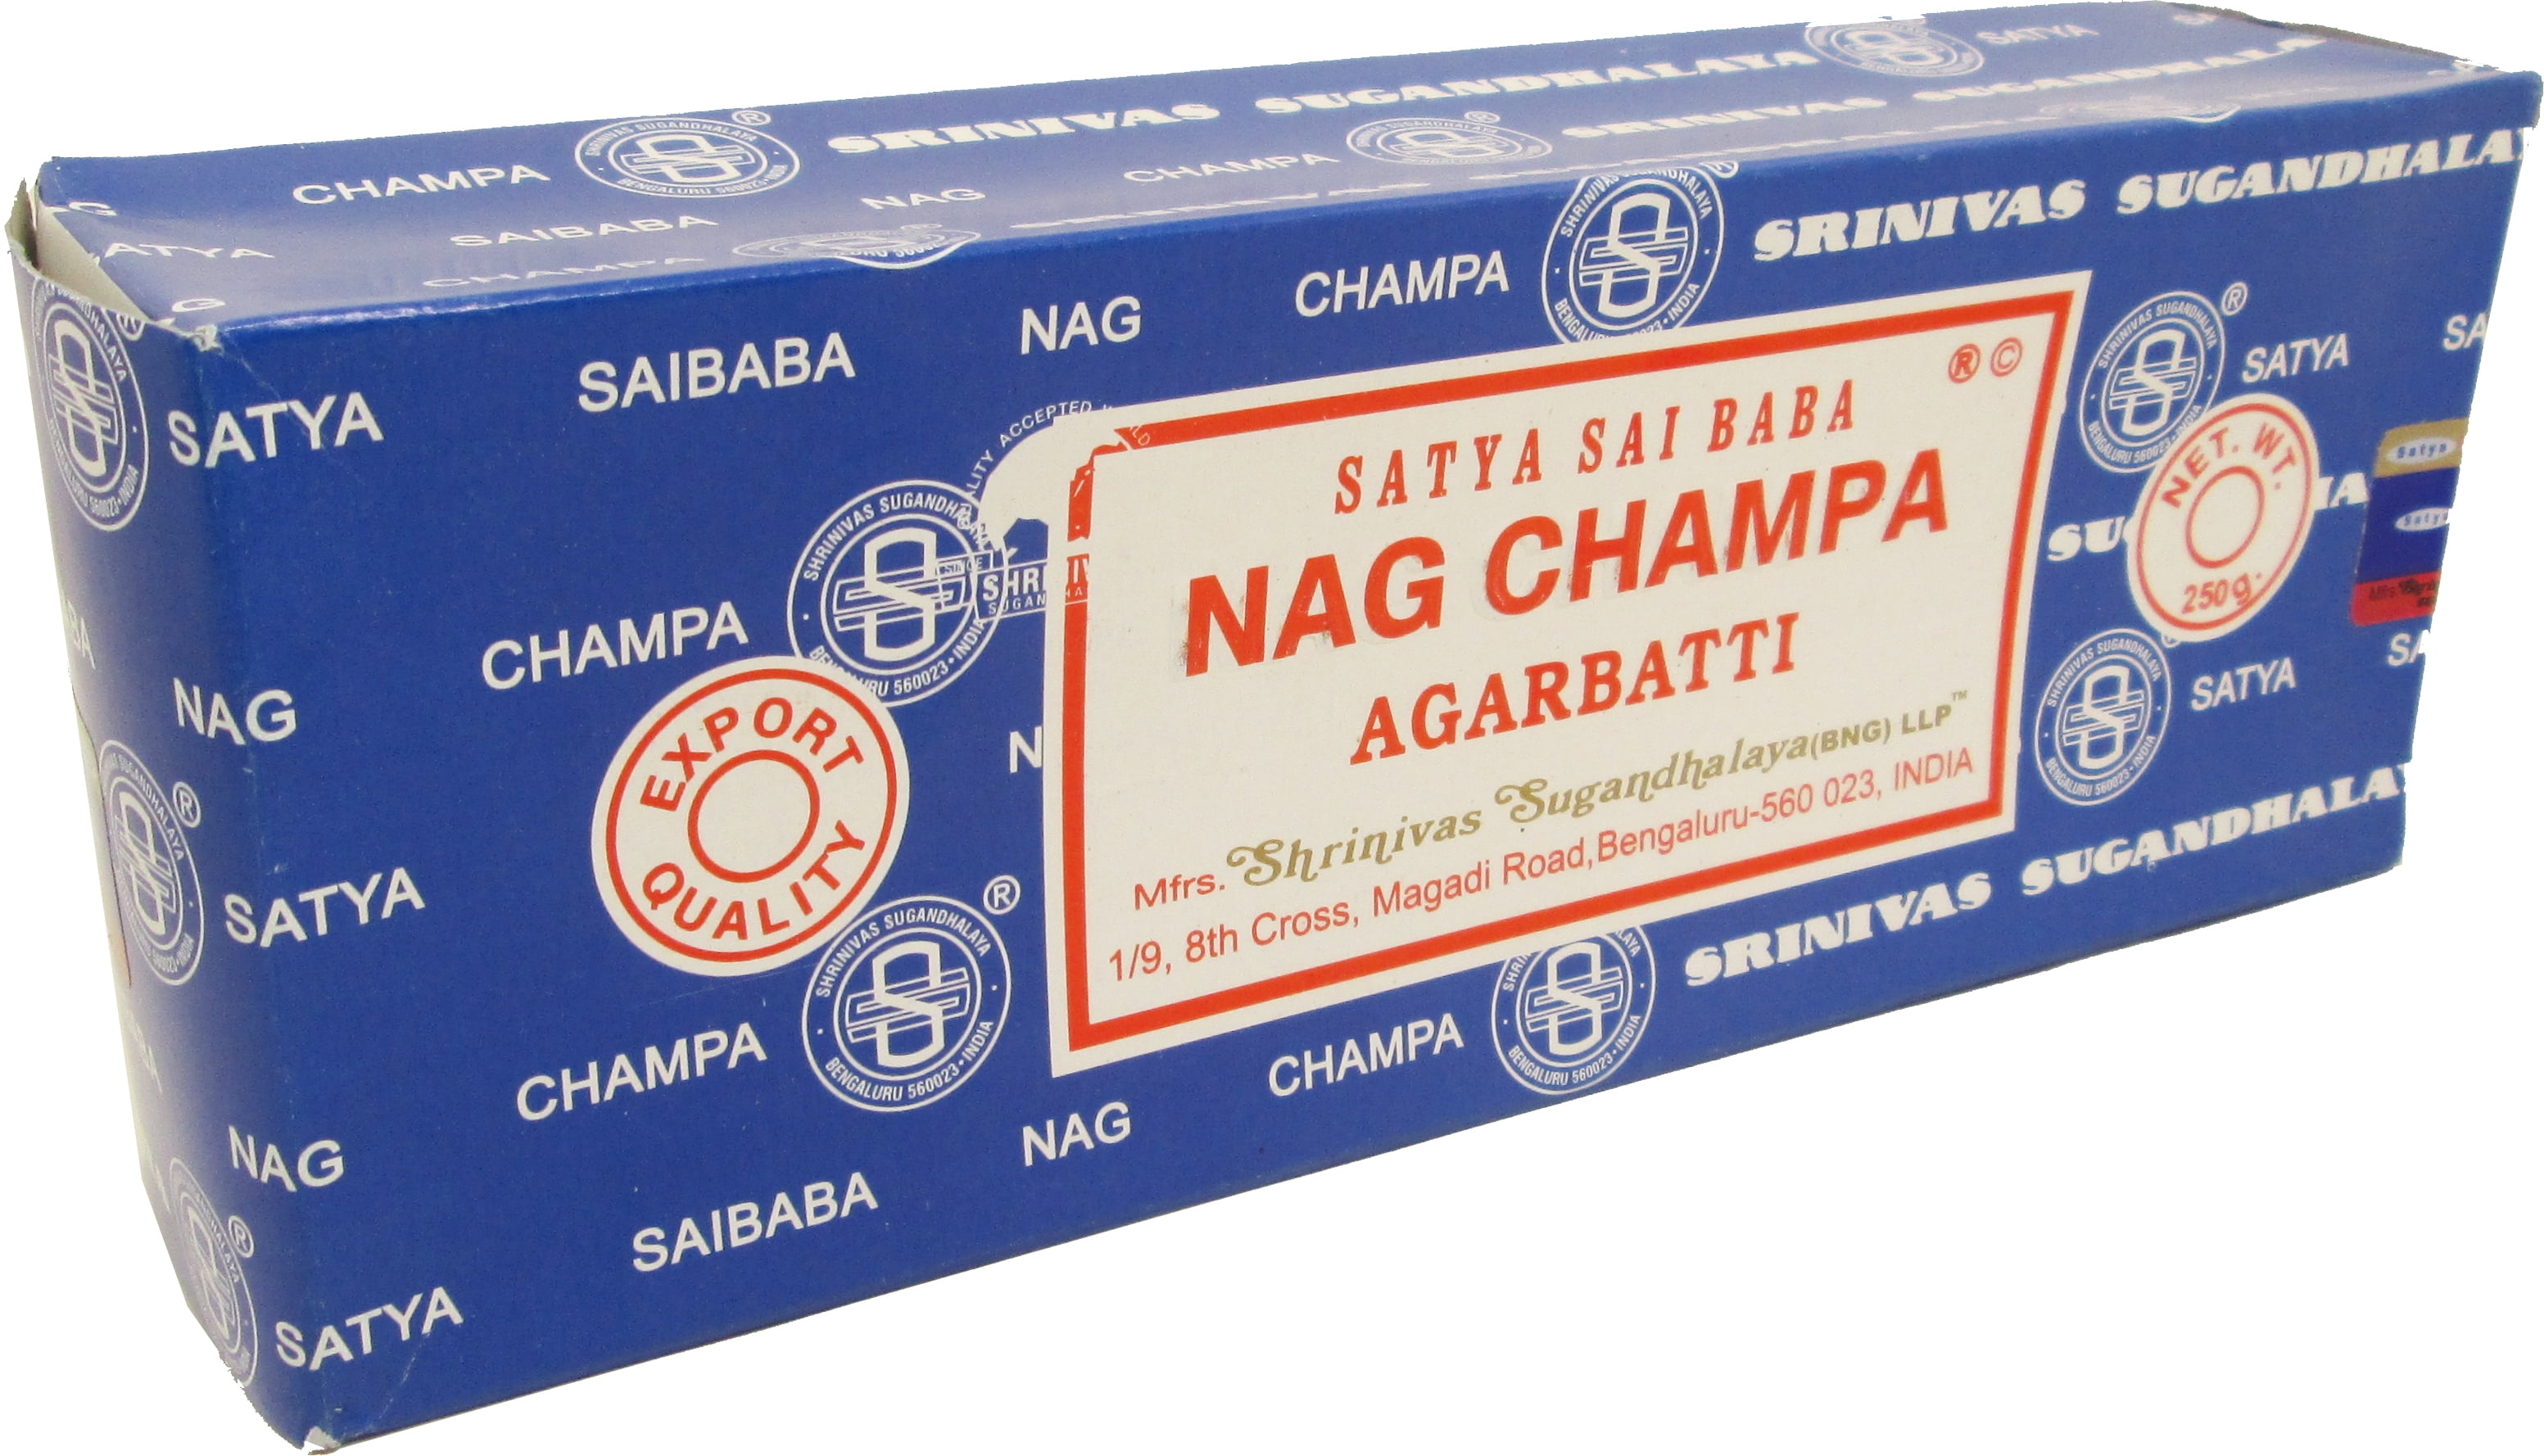 NAG CHAMPA VARIETY MIX 12 X 15G BOXES OF INCENSE, Satya Genuine SATYA SAI BABA 